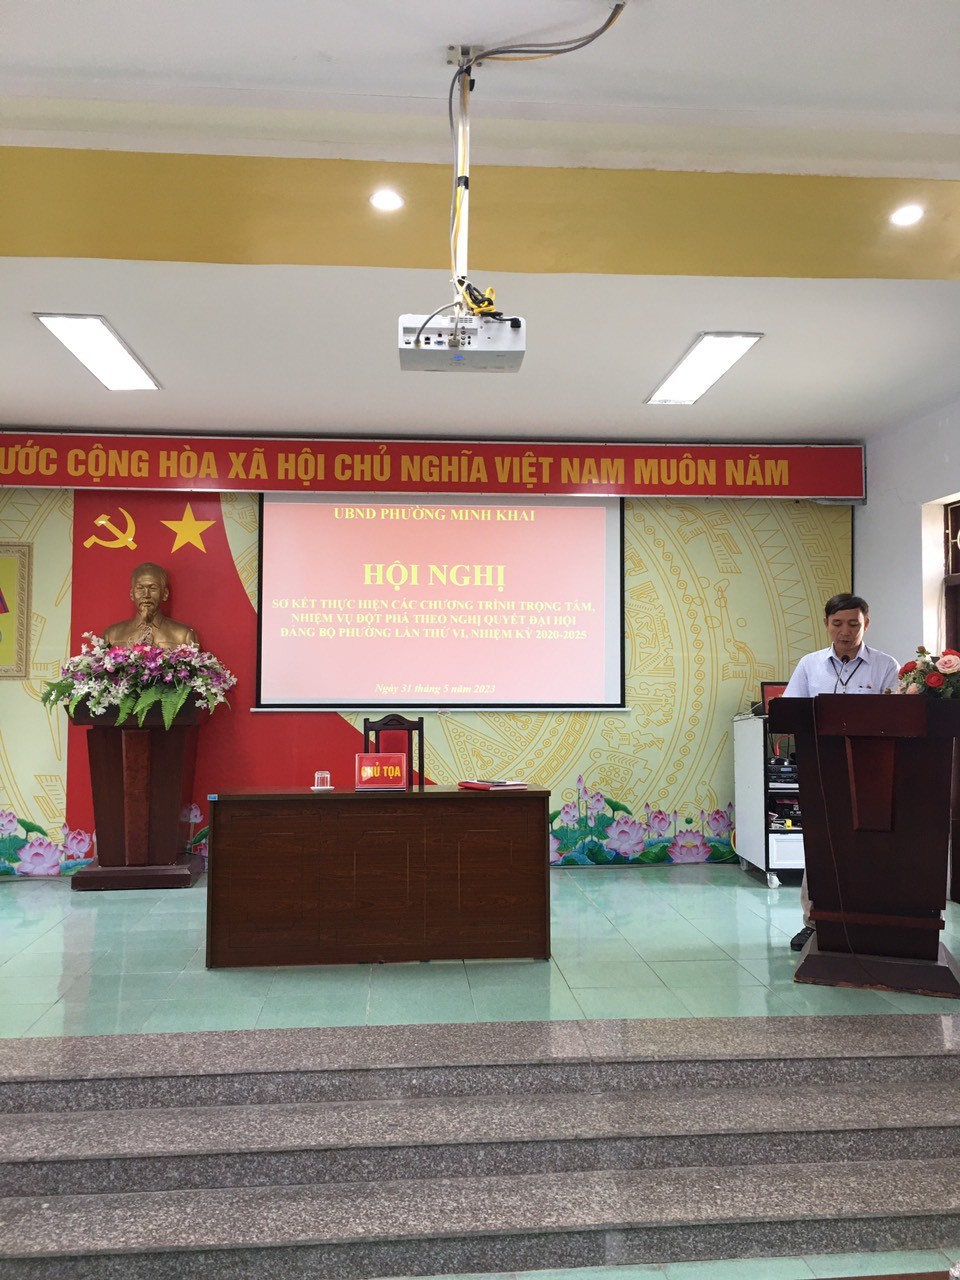 UBND phường Minh Khai tổ chức sơ kết giữa nhiệm kỳ đánh giá kết quả thực hiện các chương trình trọng tâm và Khâu đột phá tại Nghị quyết Đại hội đại biểu Đảng bộ phường lần thứ VI, nhiệm kỳ 2020 - 2025